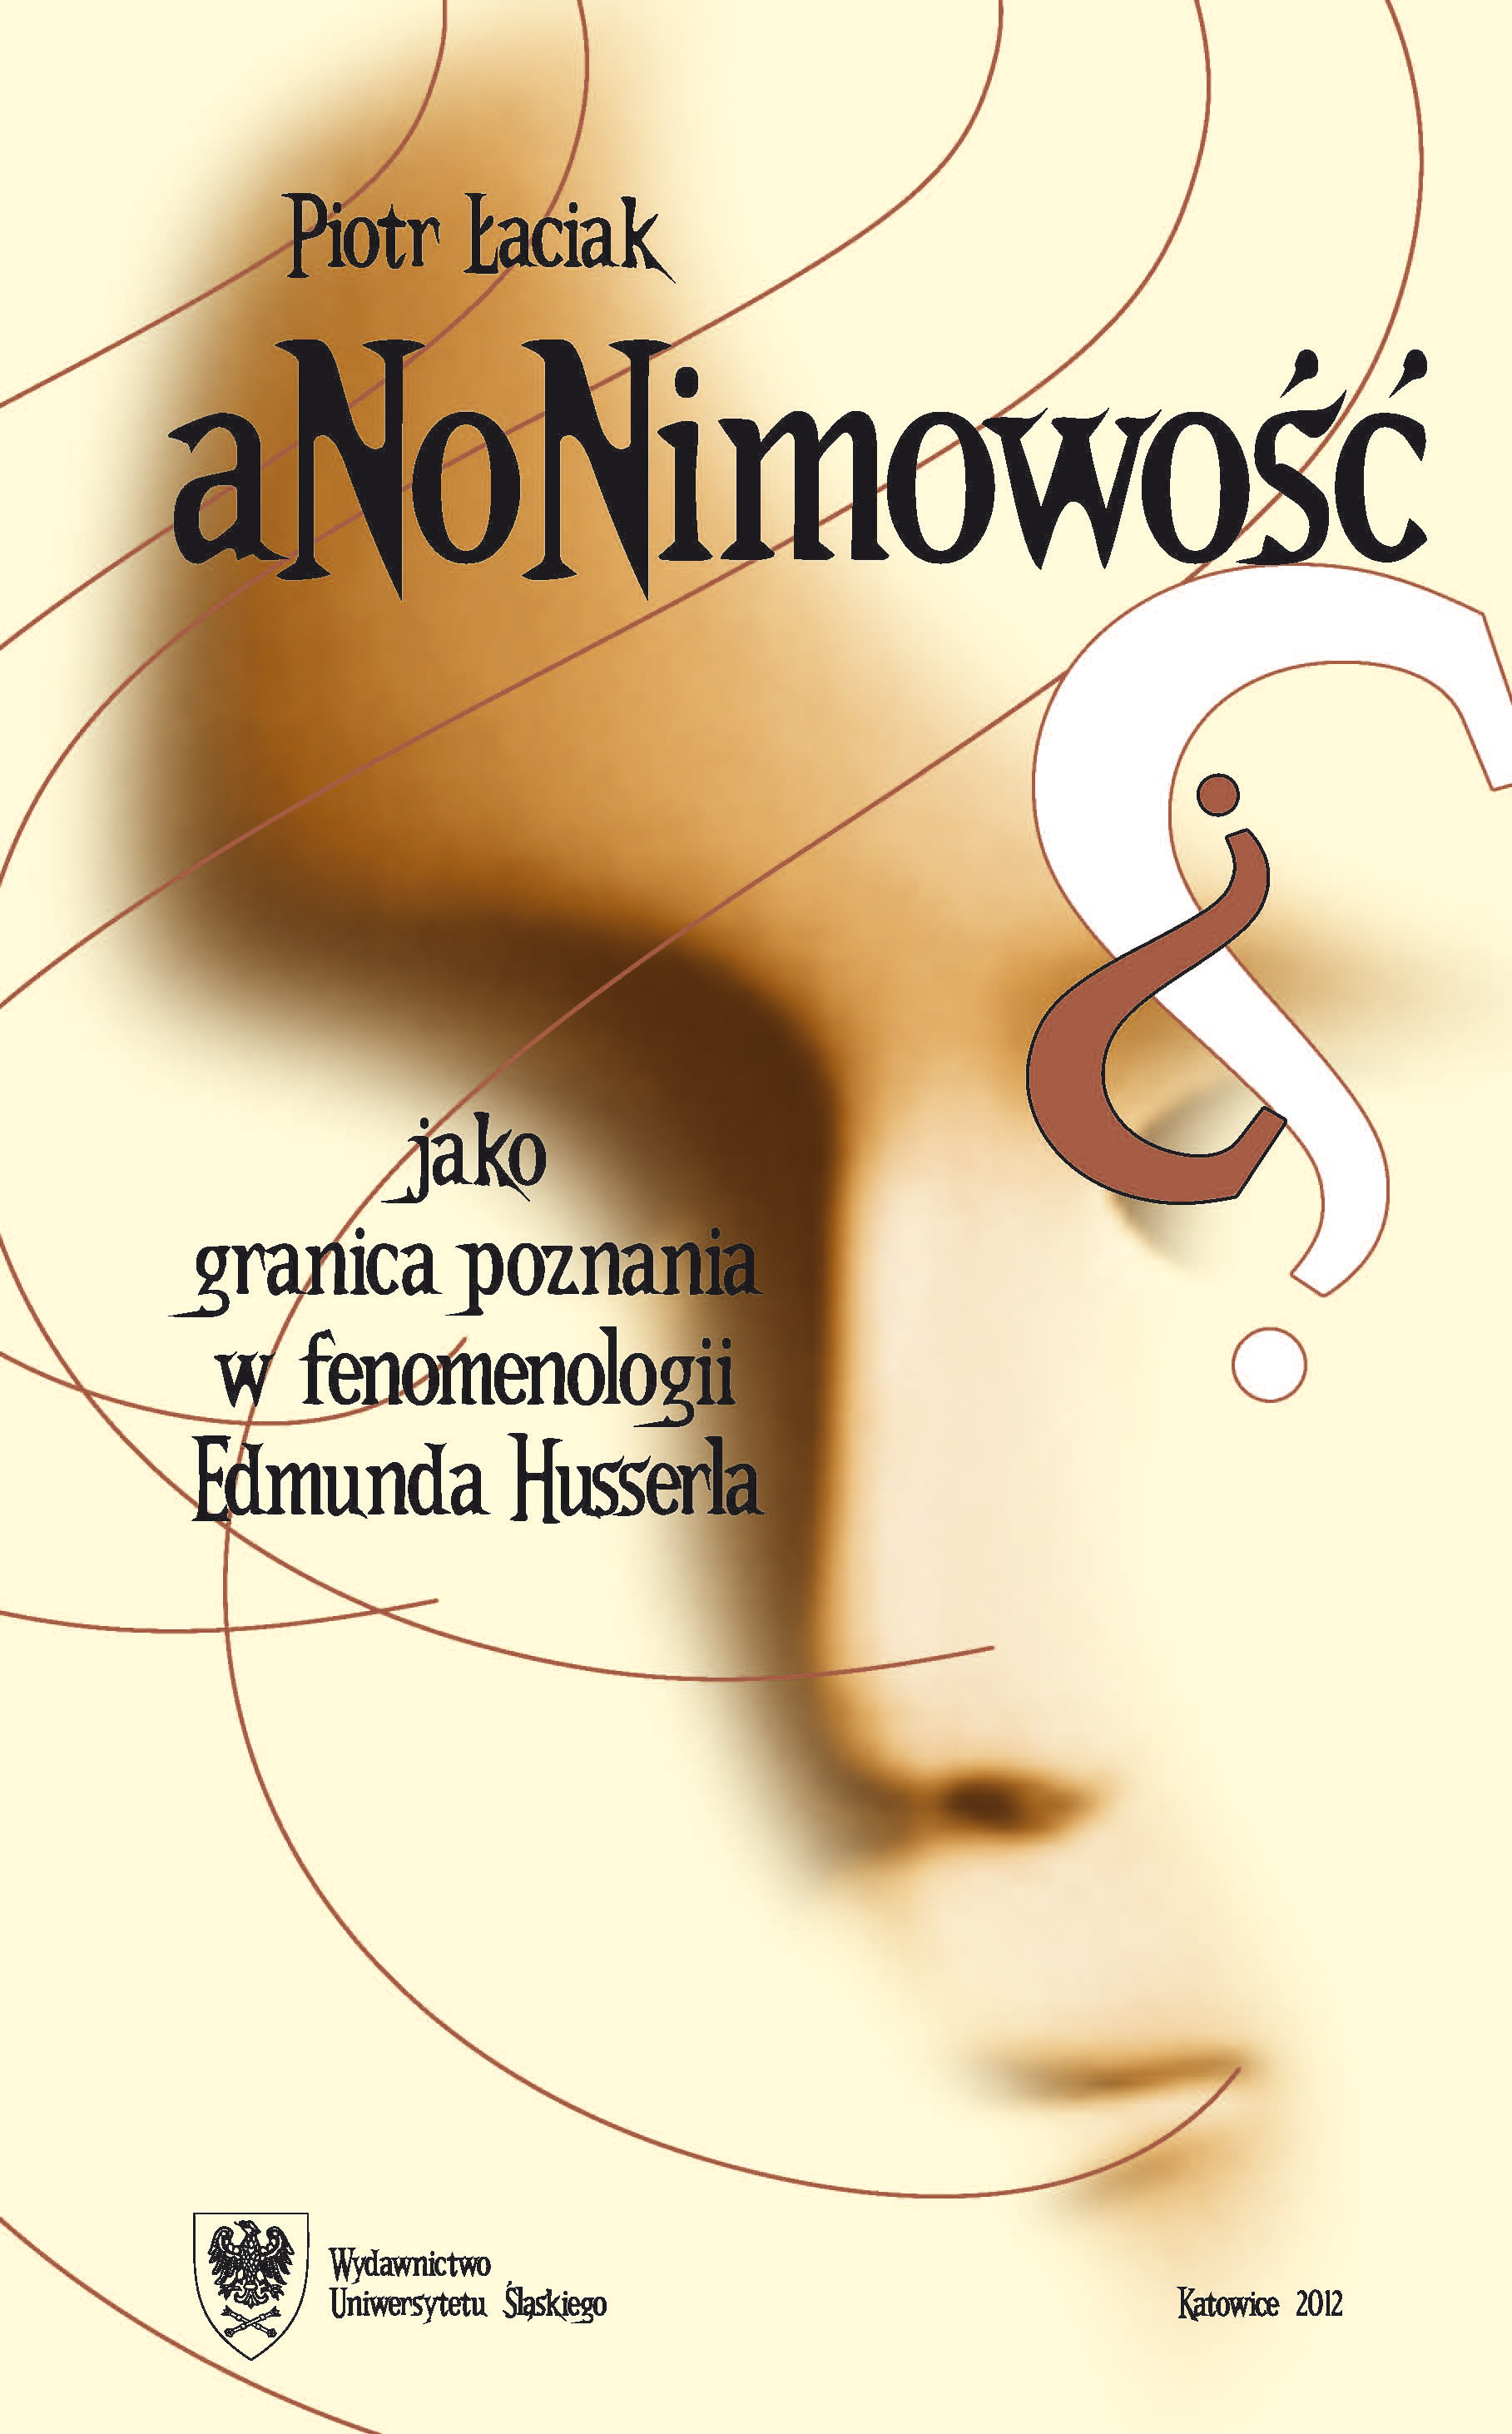 Anonimowość jako granica poznania w fenomenologii Edmunda Husserla